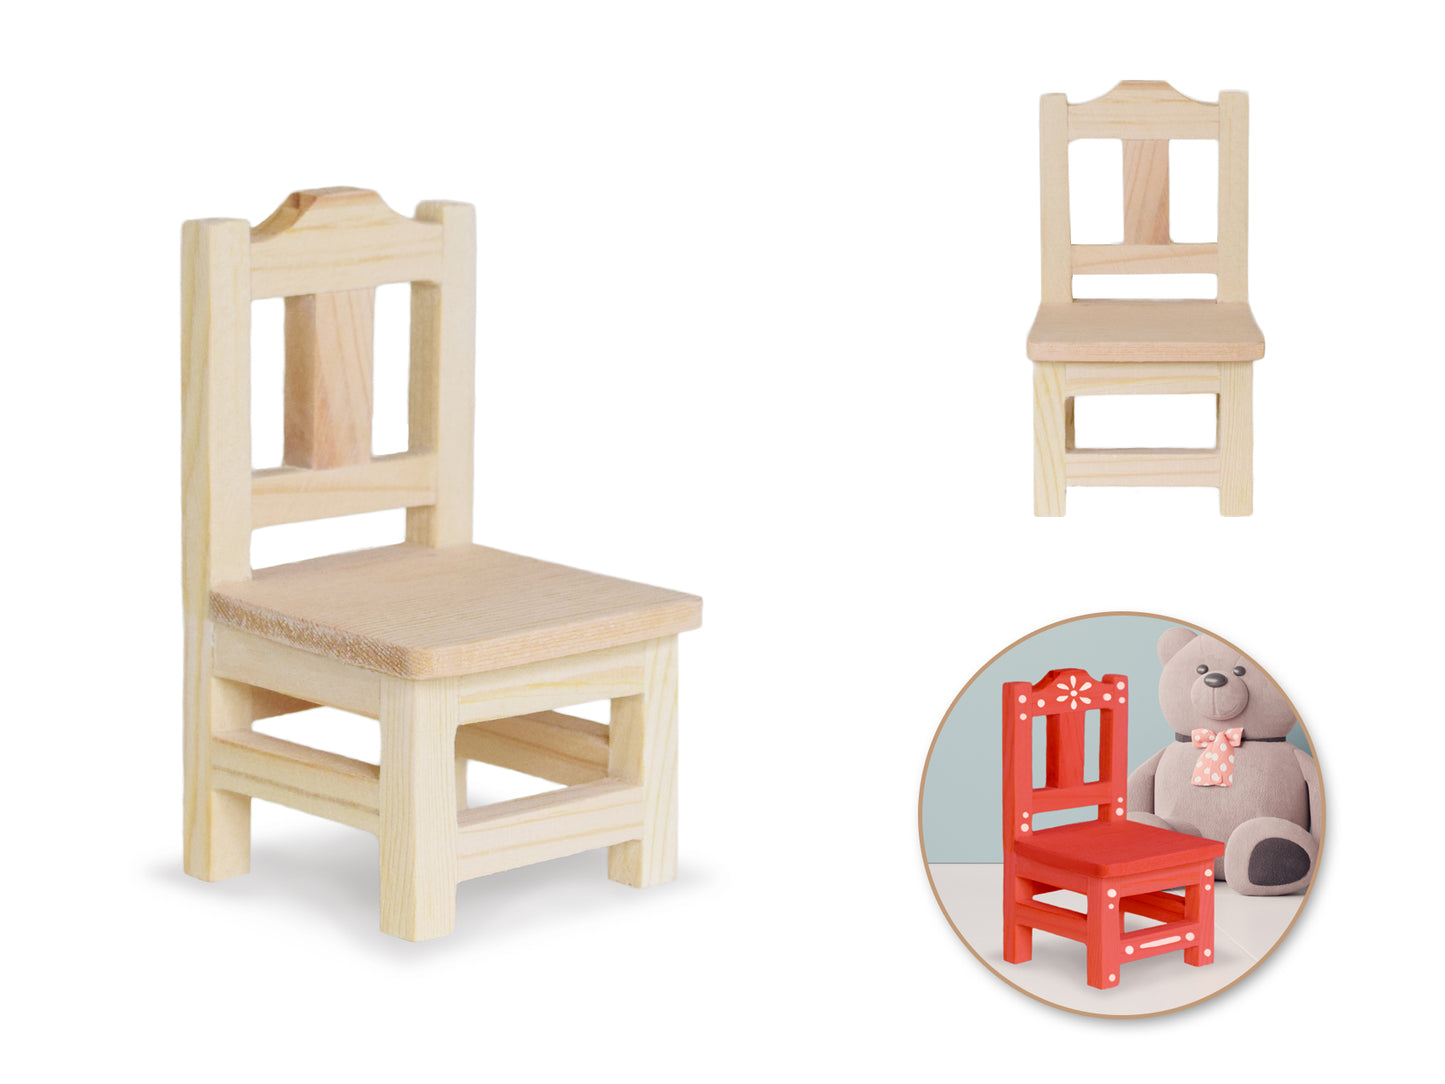 Wood Craft: 5.3x5.3x9.5cm DIY Mini Dining Chair